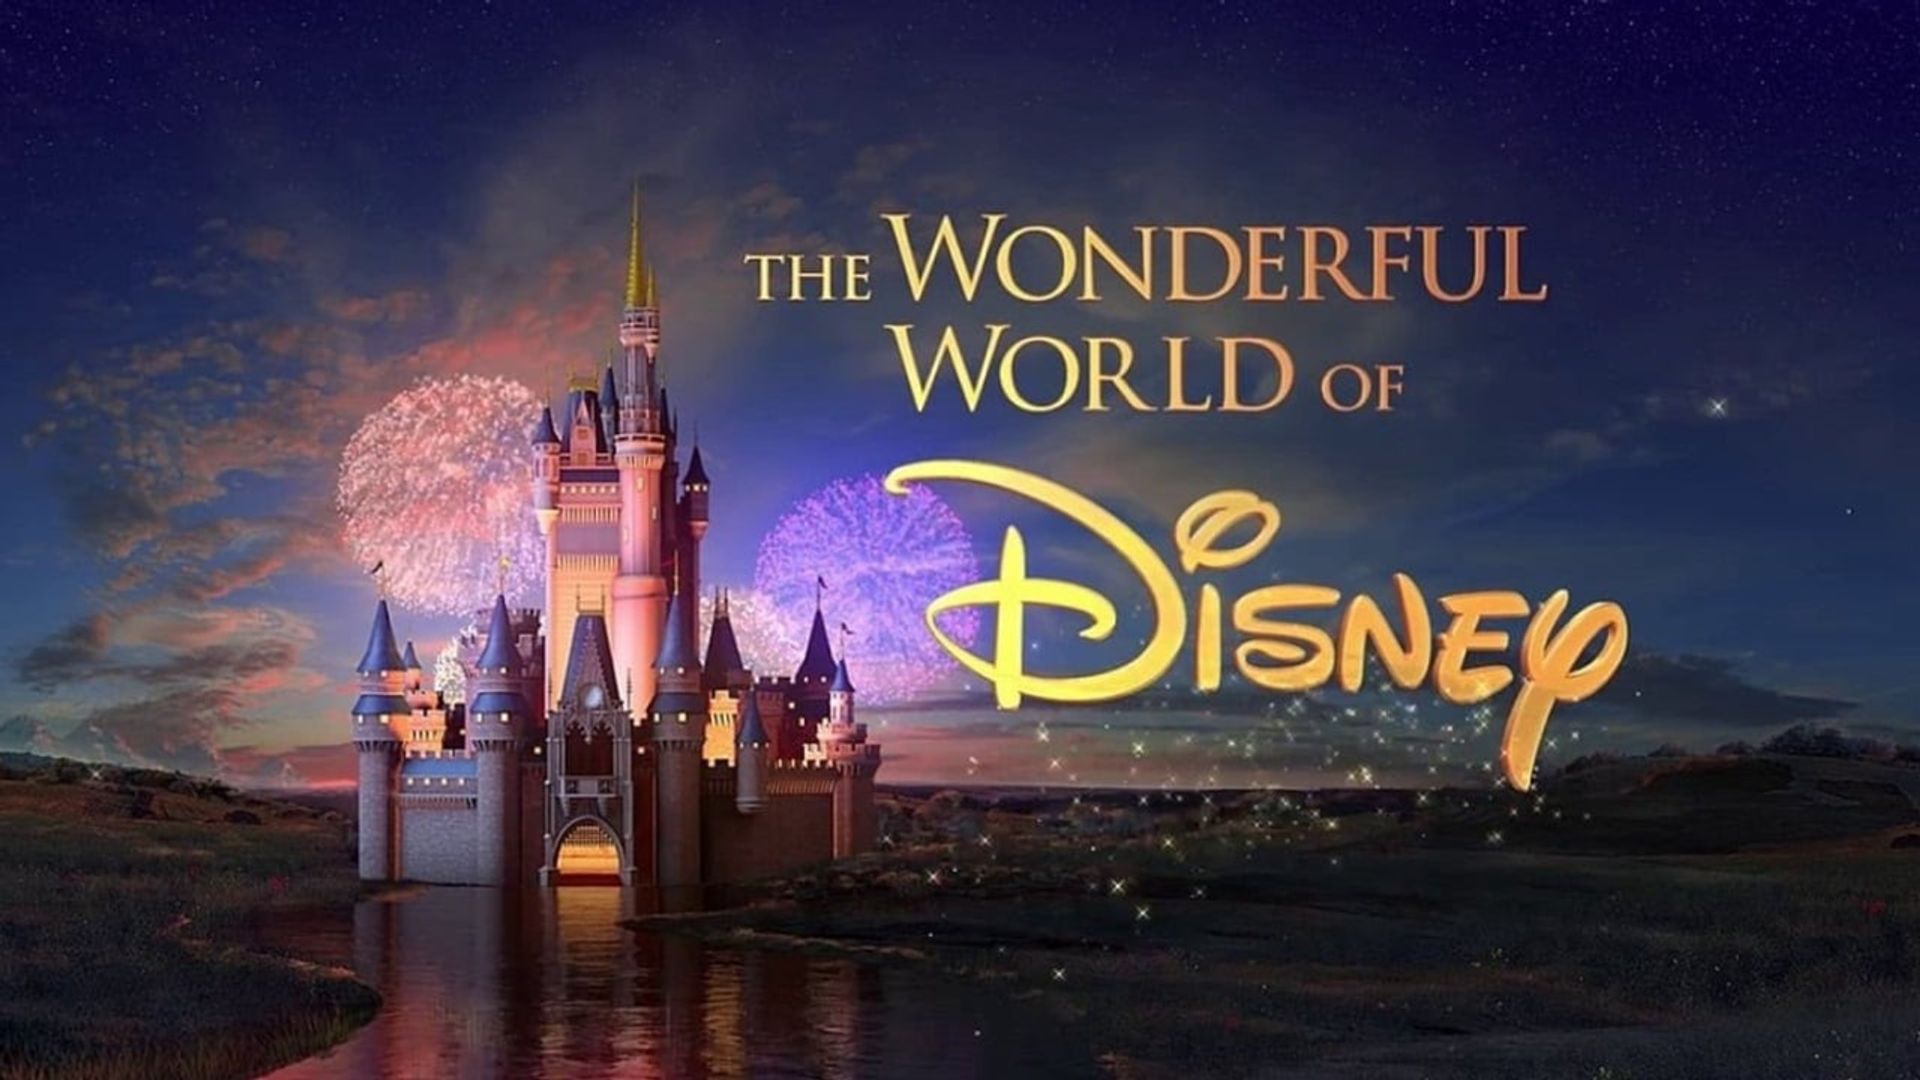 The Wonderful World of Disney: Magical Holiday Celebration background